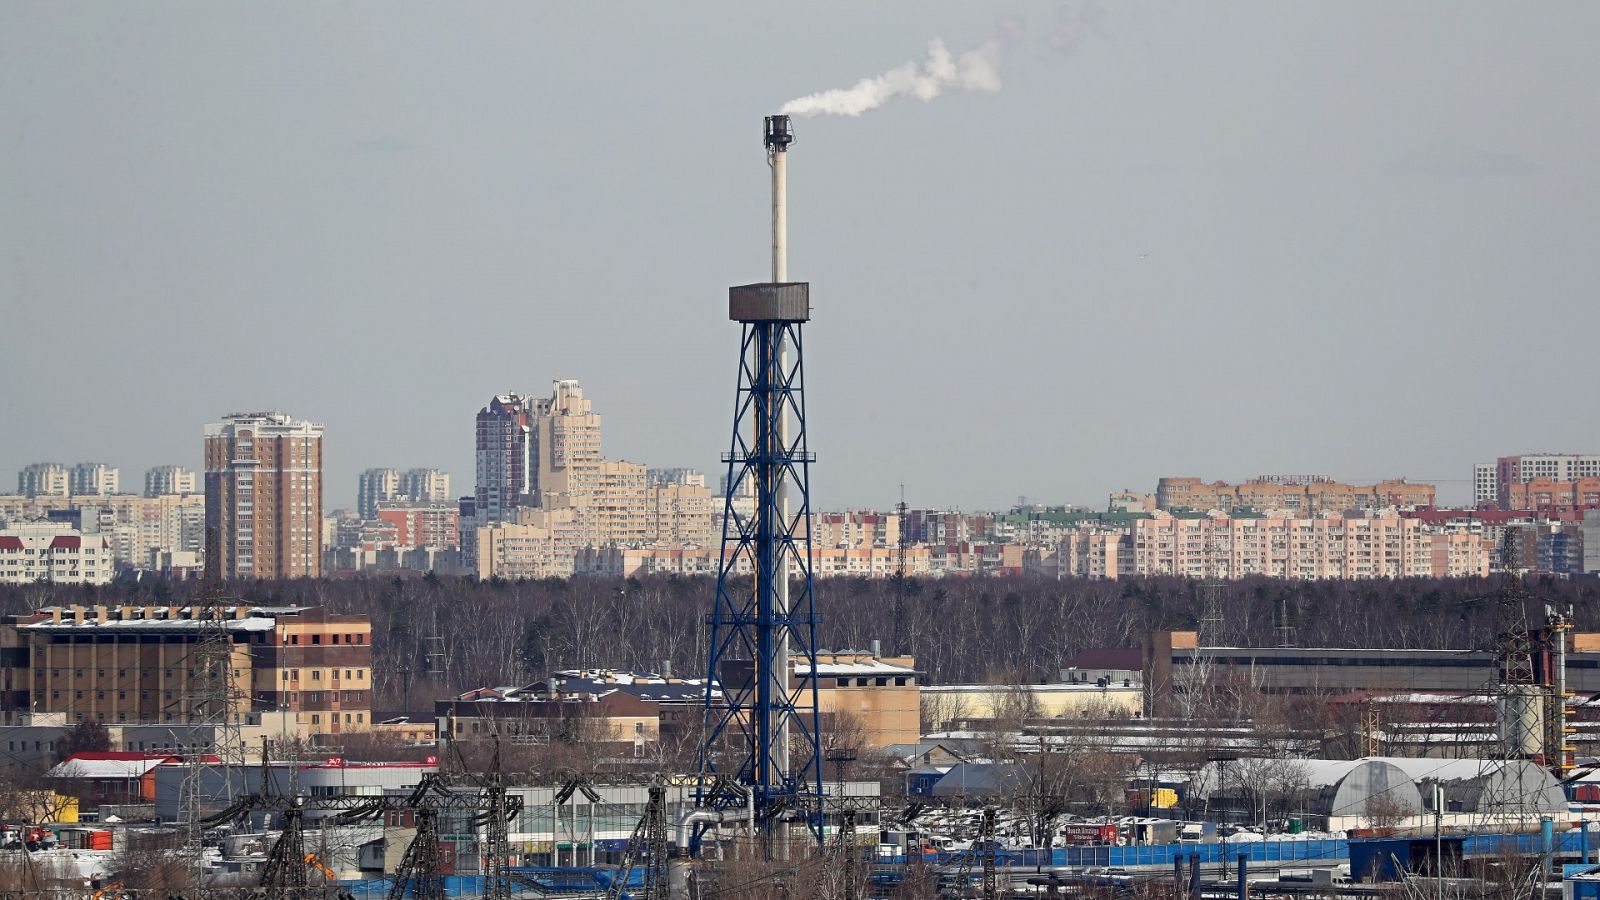 El FMI advierte: el suministro de gas ruso "está en peligro" y habría que importar de otros países